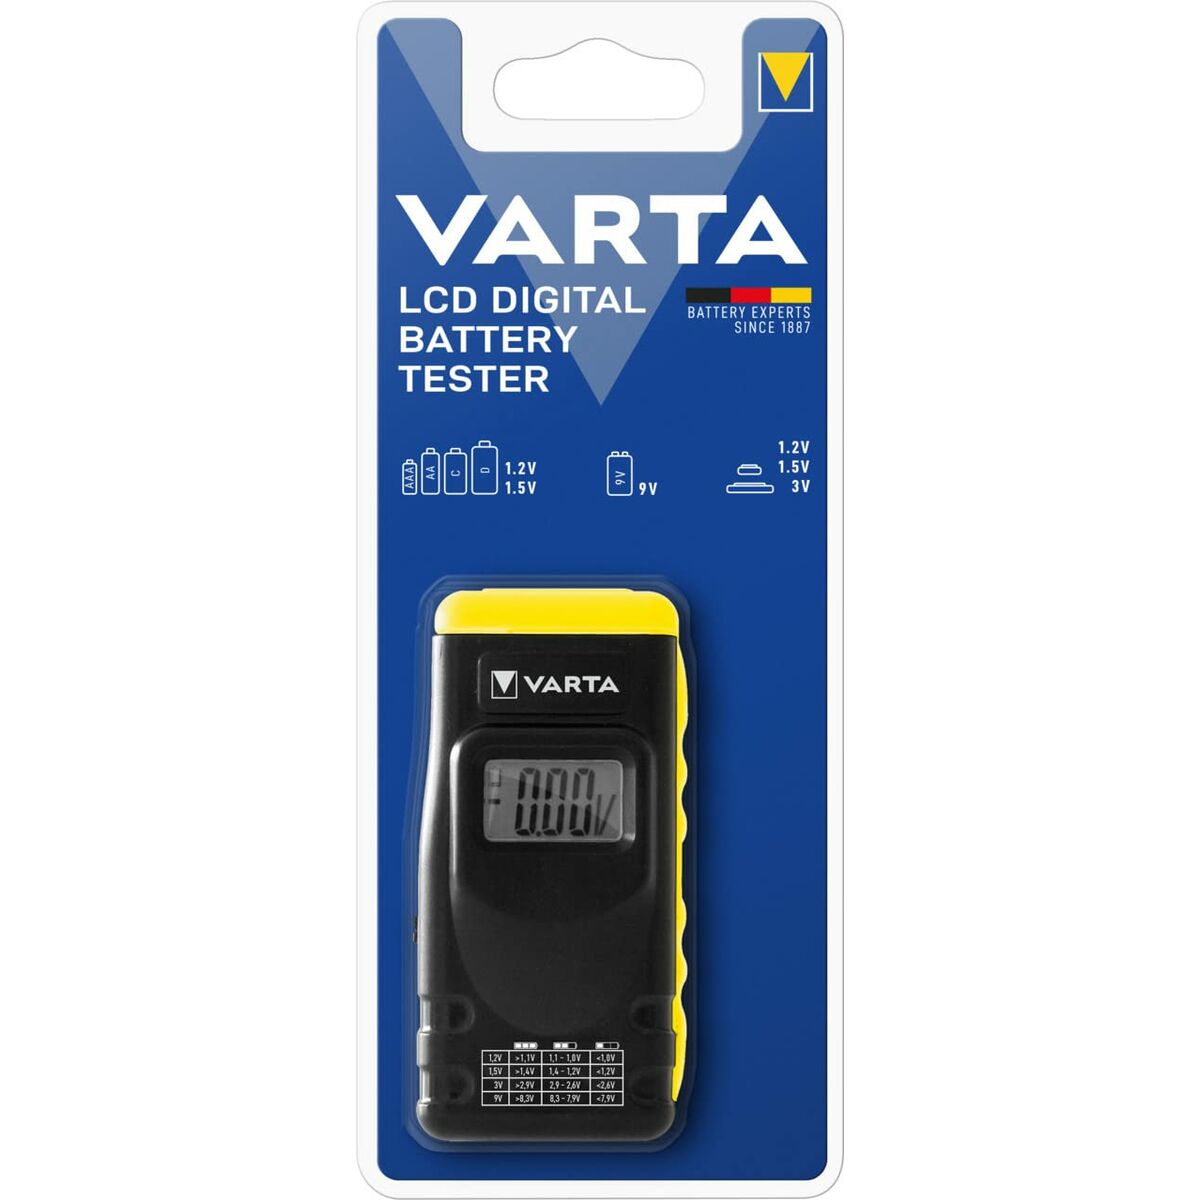 Tester Varta 891 Ecran LCD